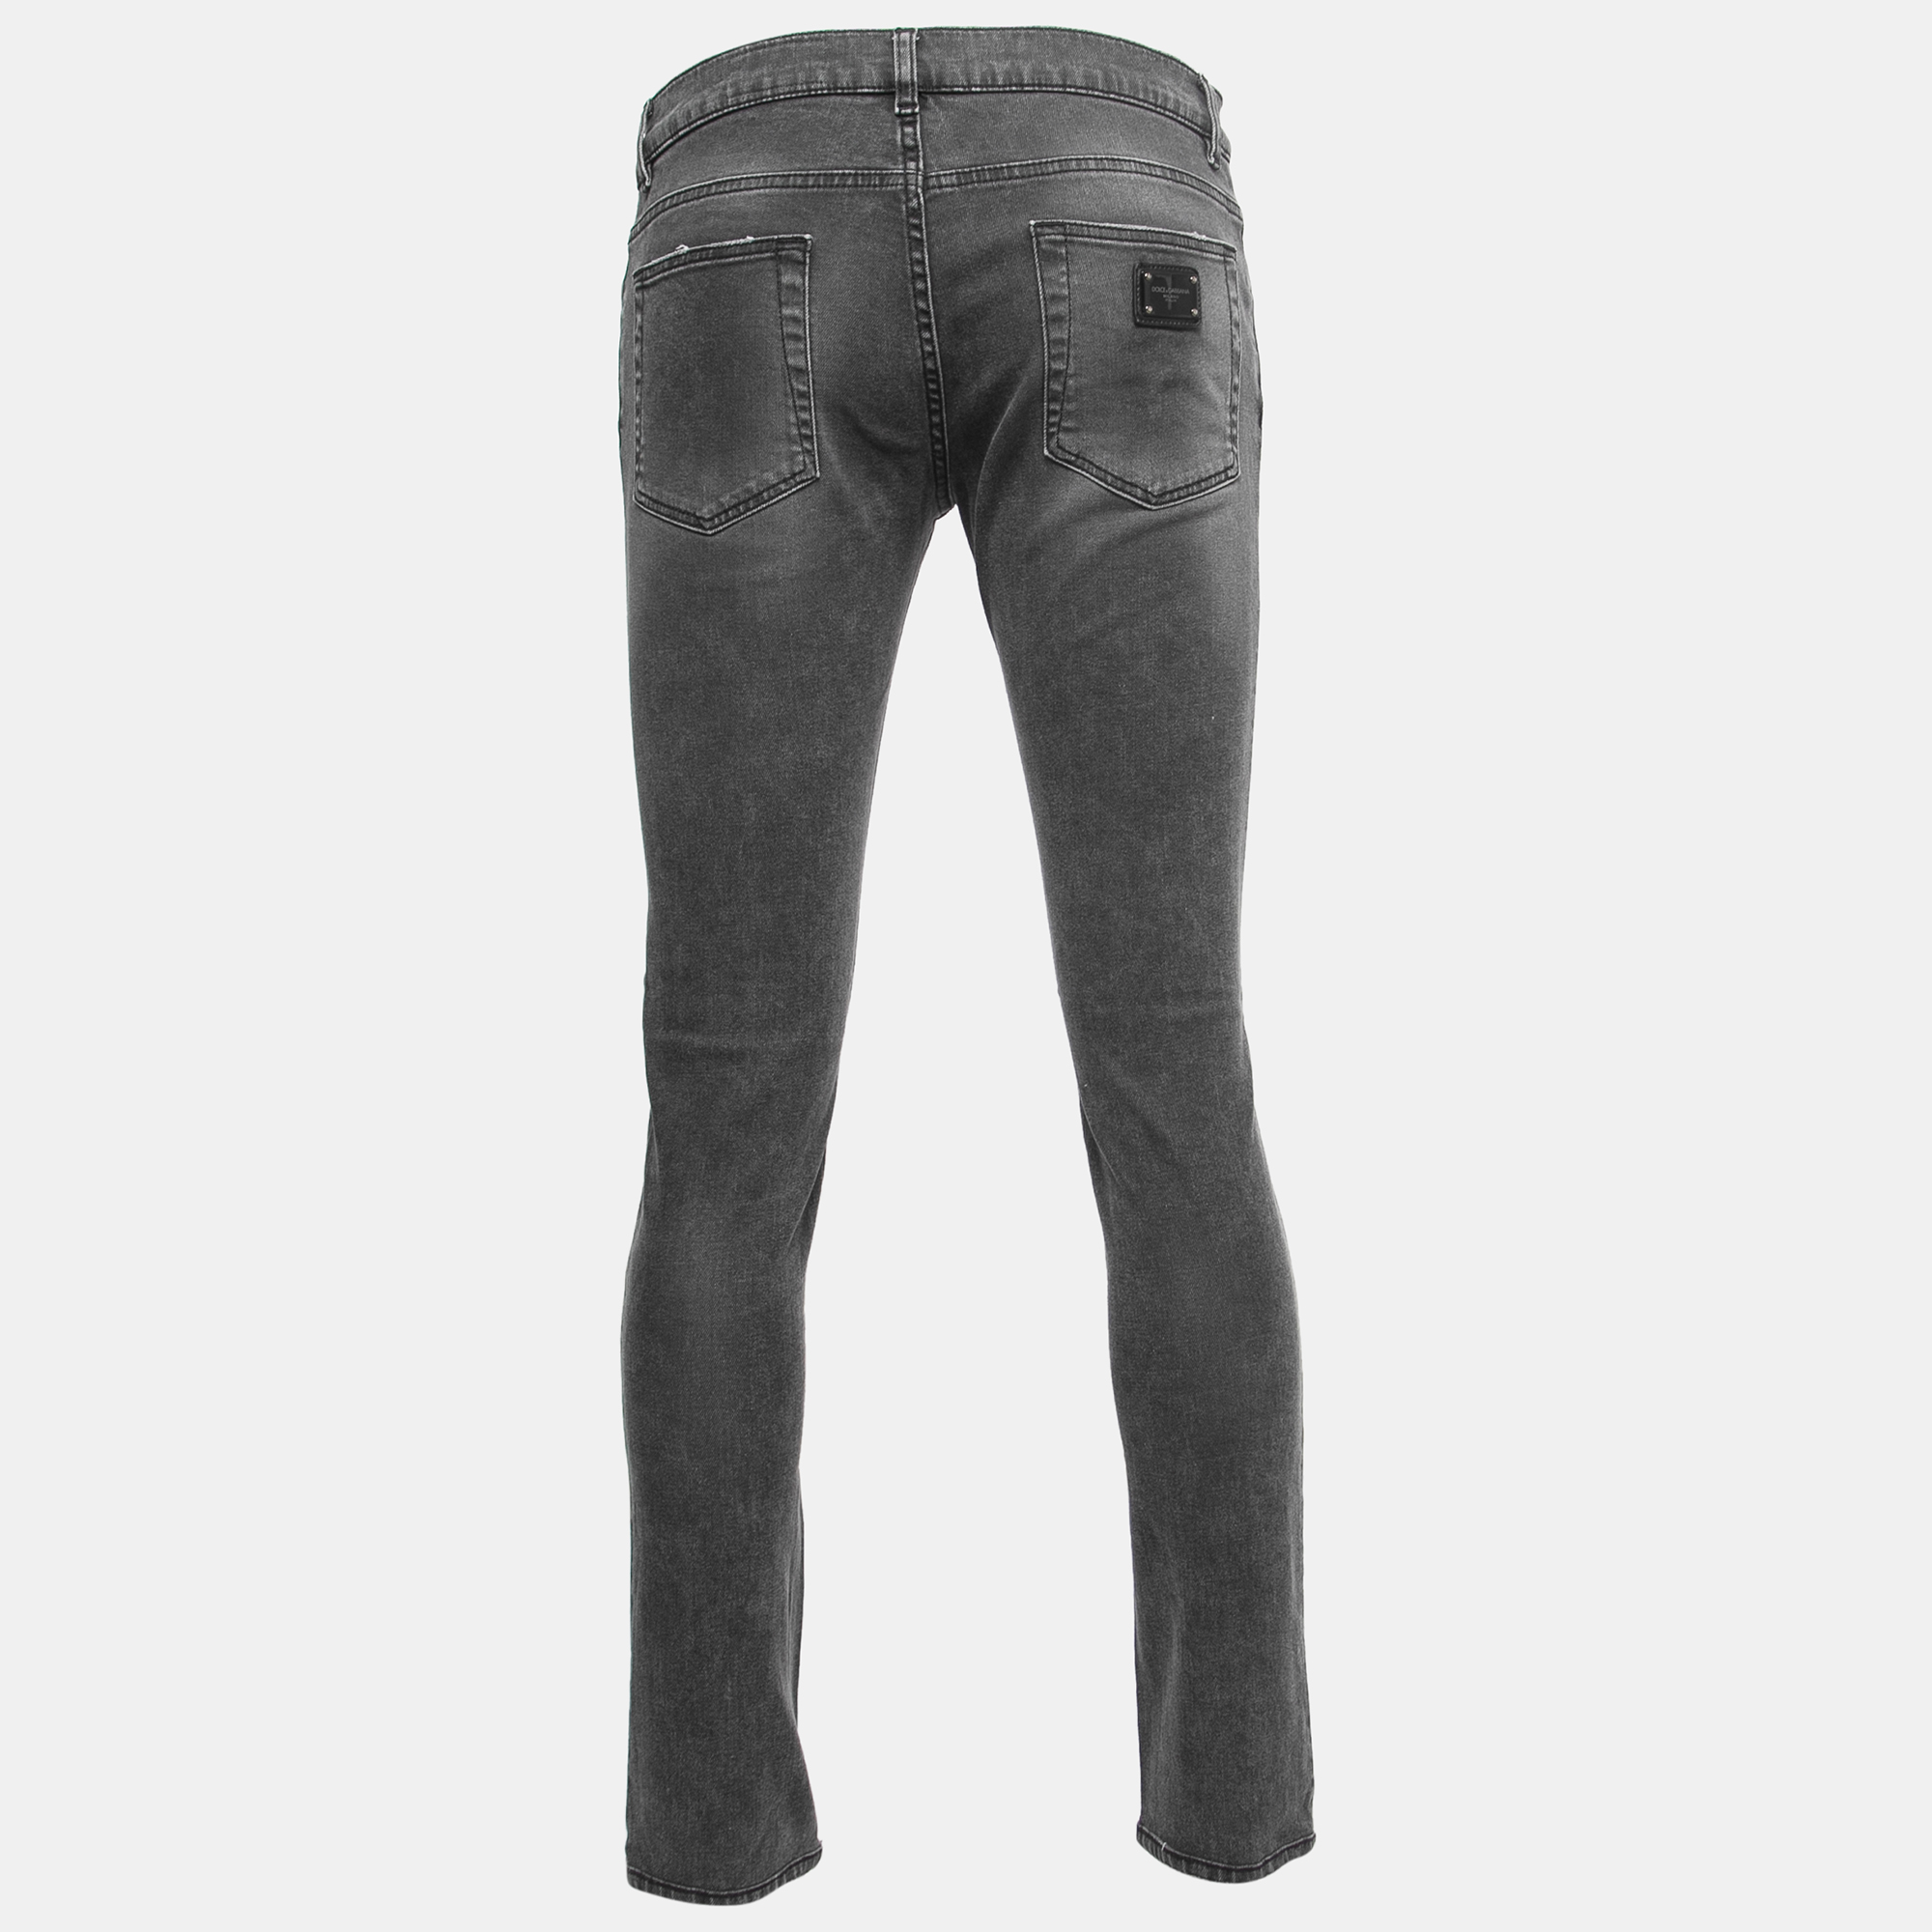 

Dolce & Gabbana Grey Distressed Denim Skinny Jeans  Waist 32